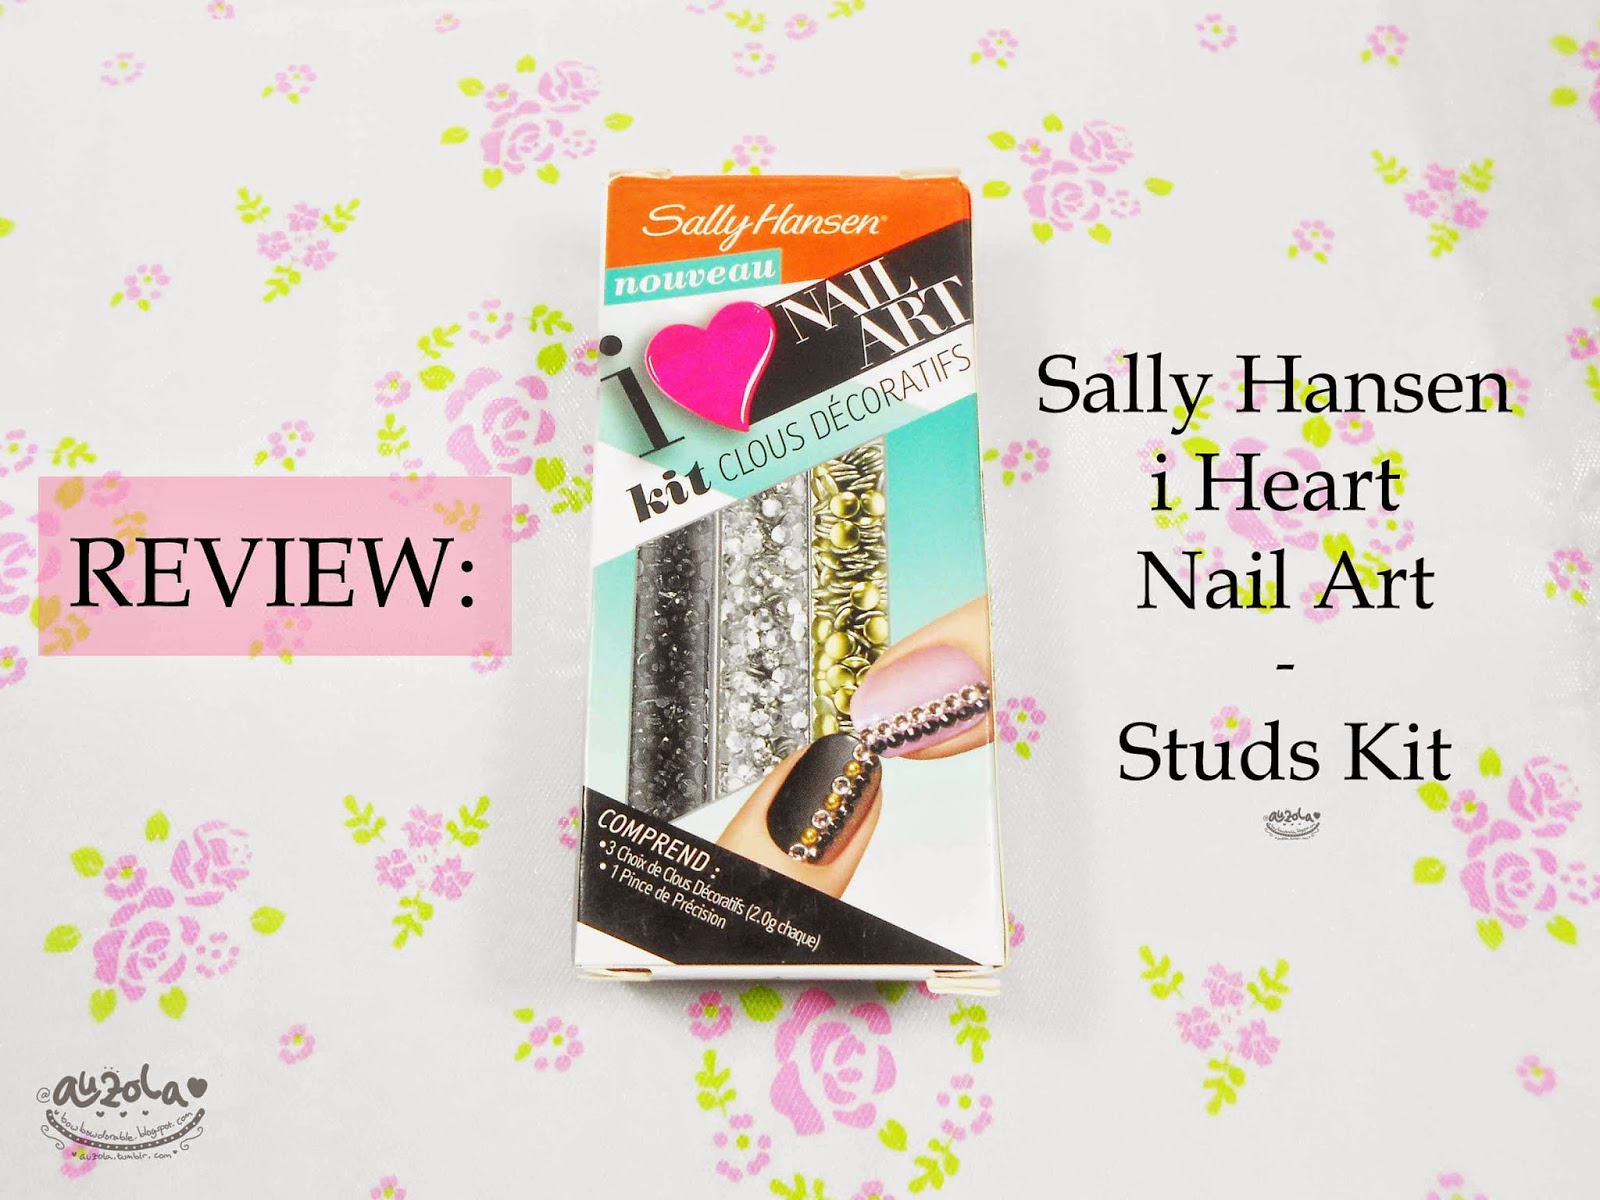 3. Sally Hansen Nail Art Pens - wide 10